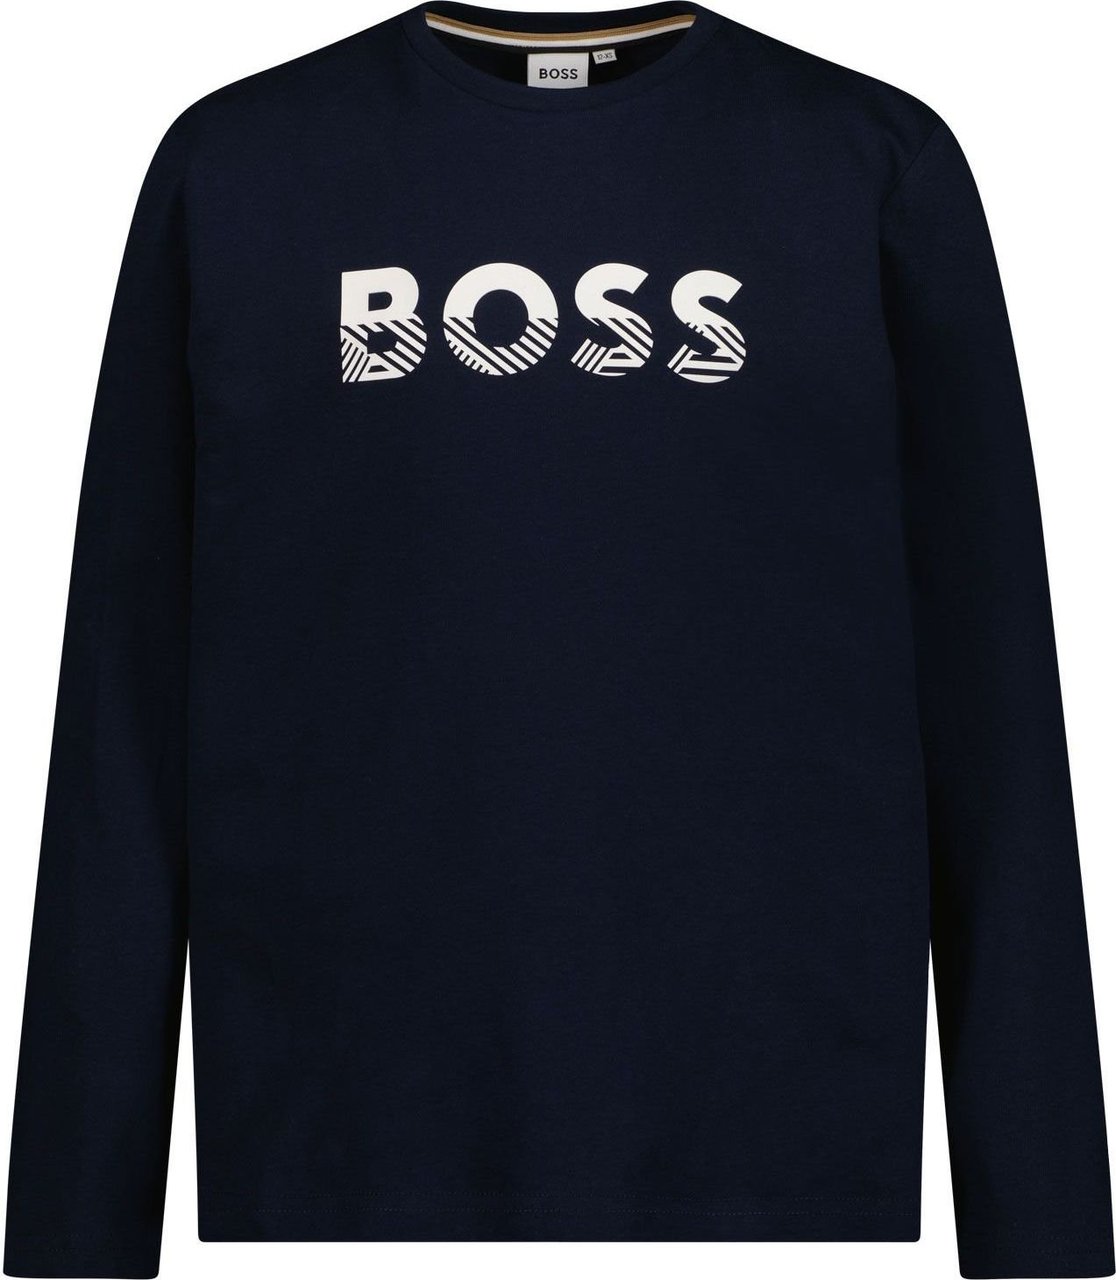 Hugo Boss Boss J25M15 kinder t-shirt navy Blauw